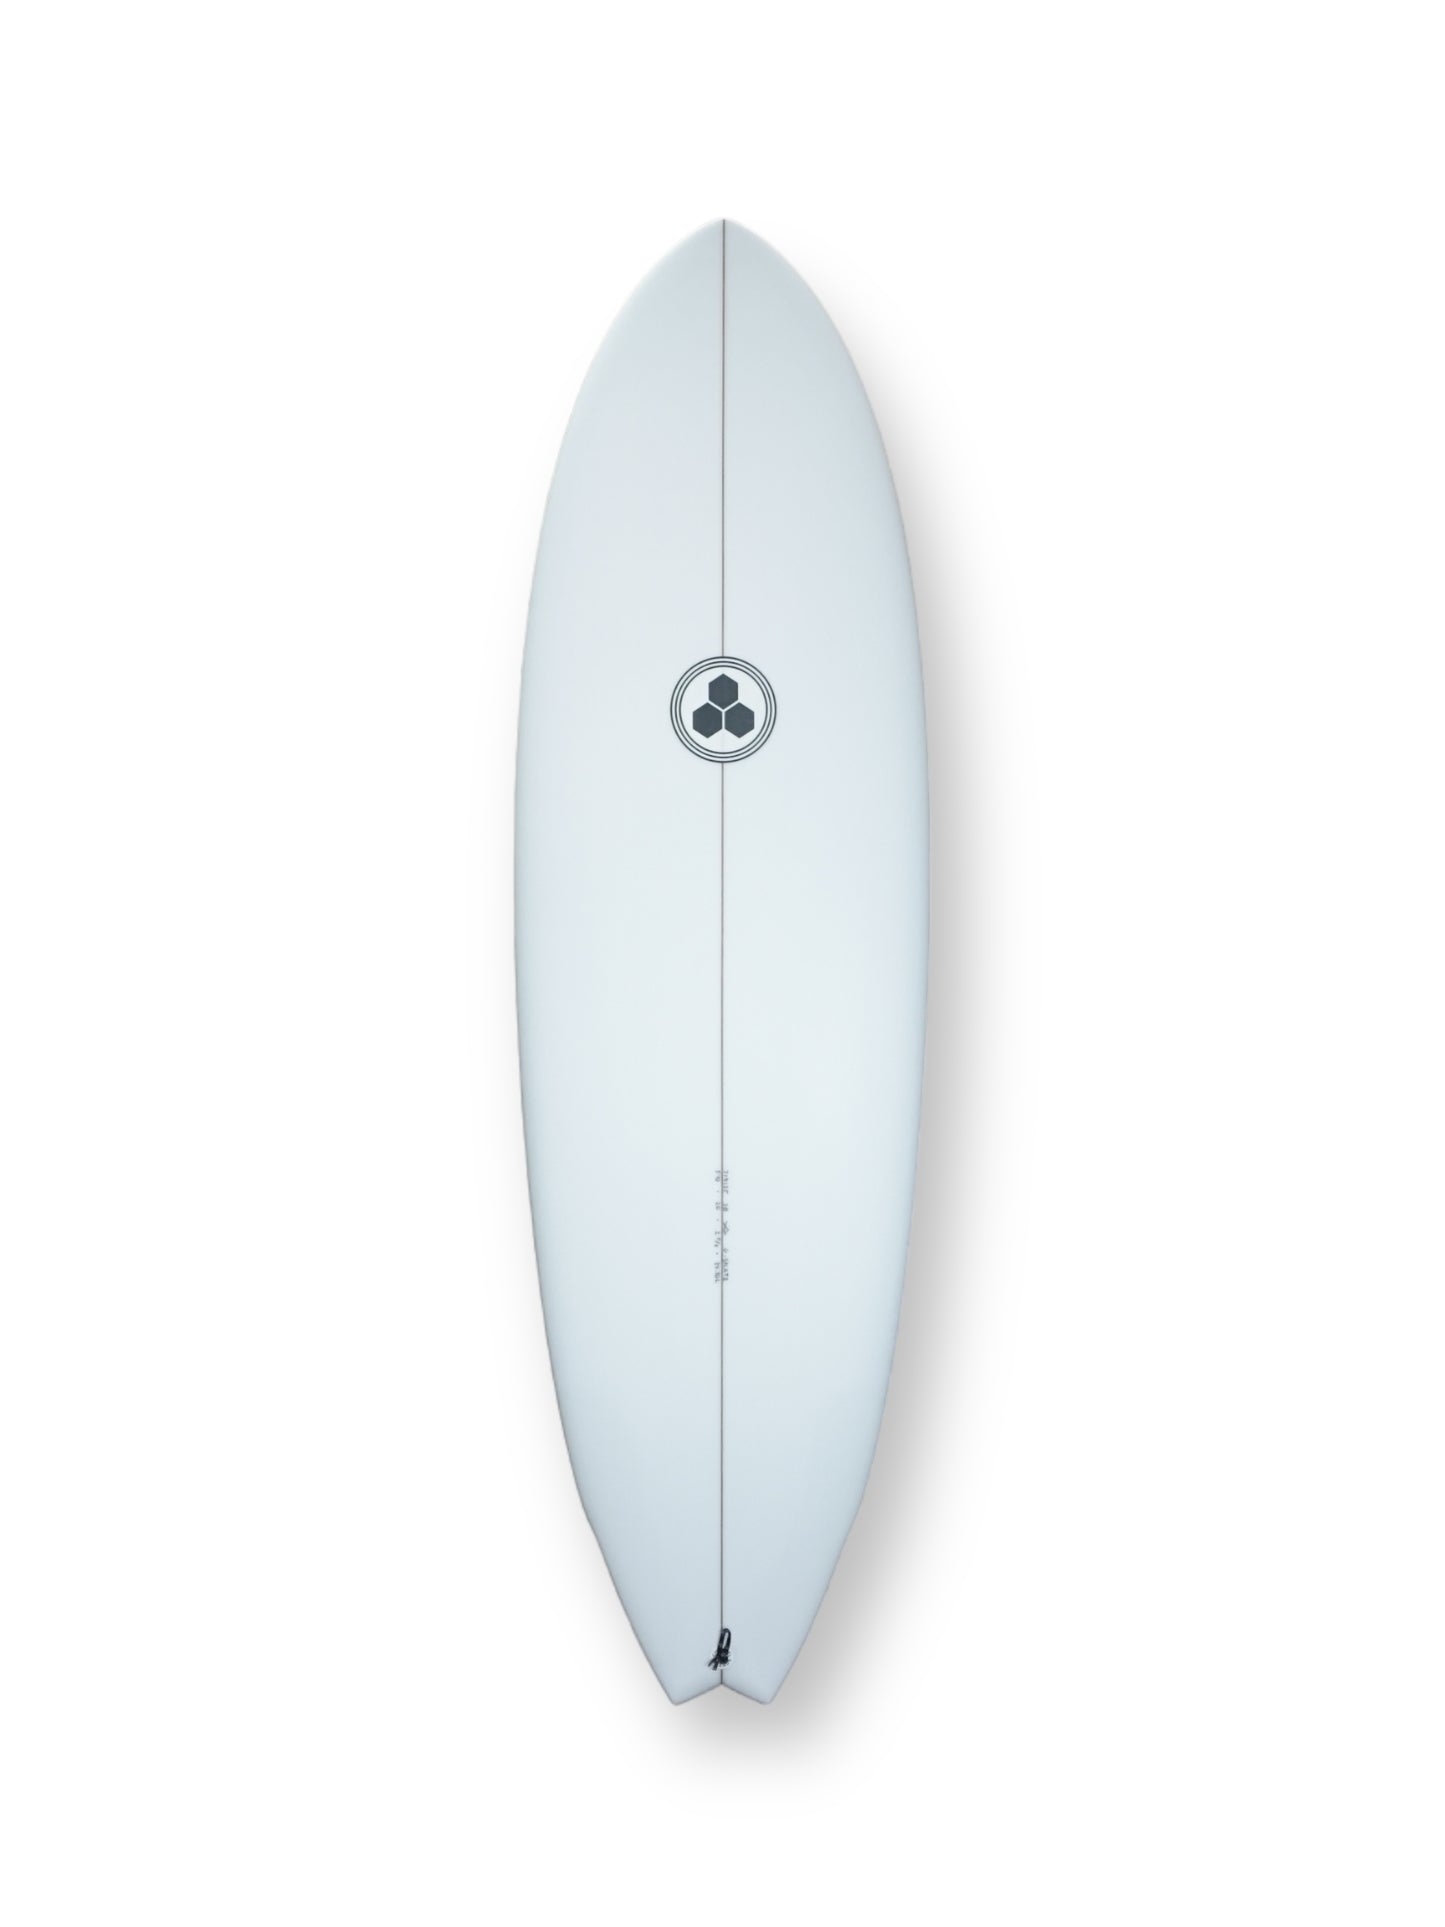 CHANNEL ISLANDS G-SKATE 5'10" SURFBOARD